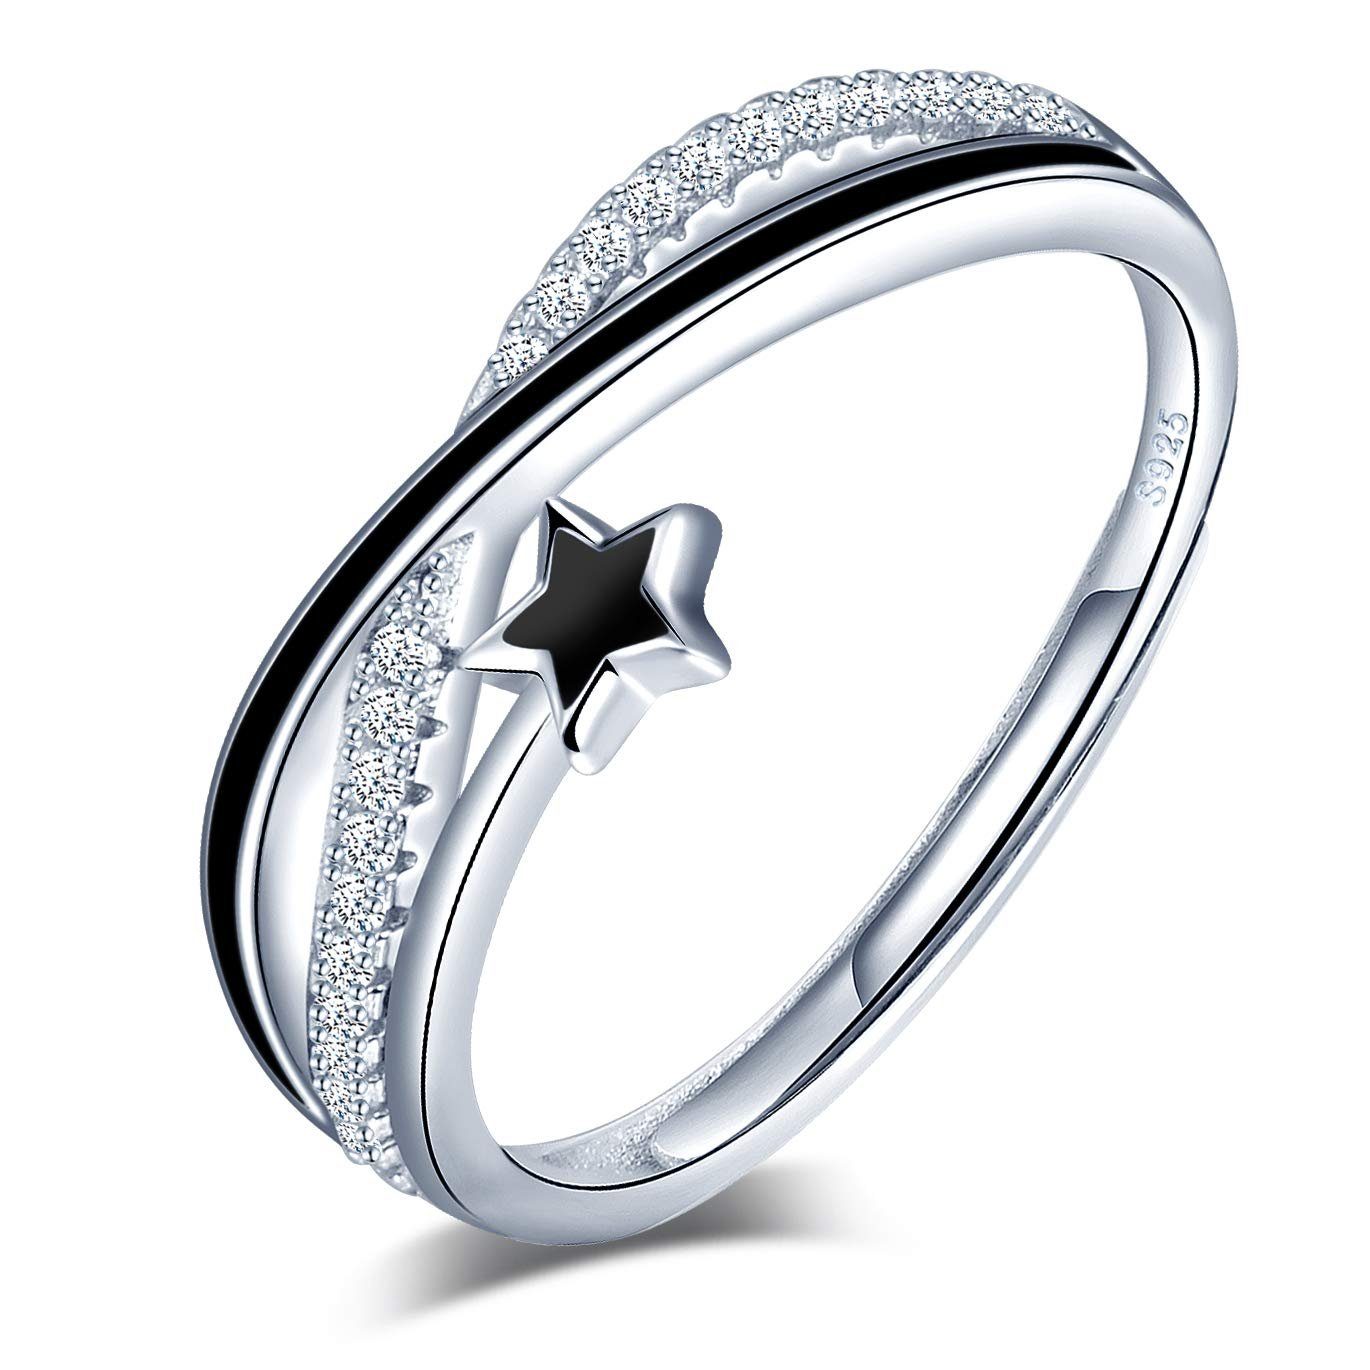 POCHUMIDUU Fingerring Verstellbarer Jahrestag Knoten Set Star Damenring, Silberschmuck für Frauen aus 925er Sterlingsilber | Fingerringe